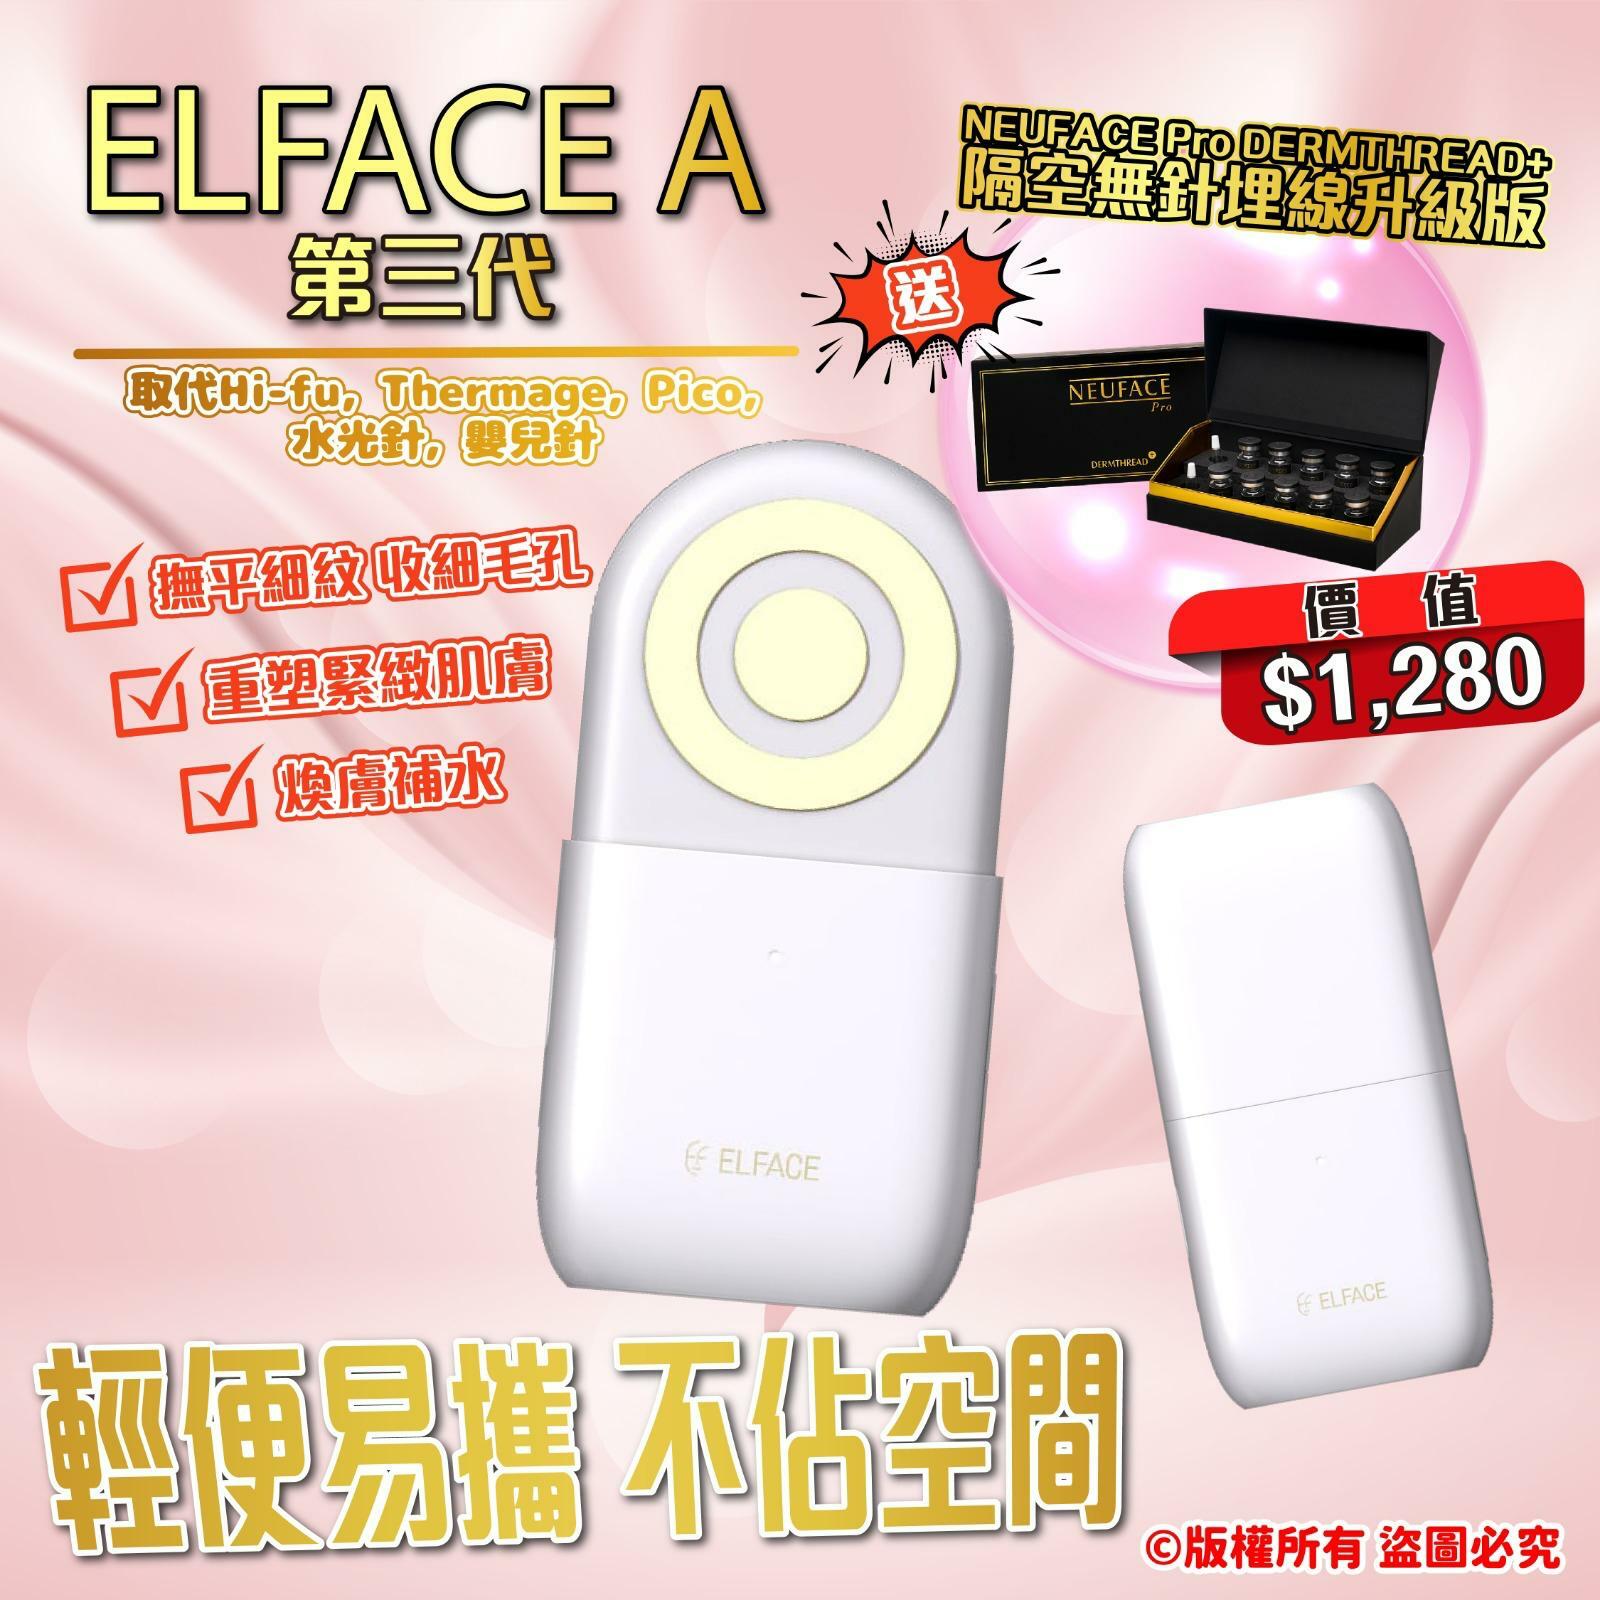 🎌日本瘋搶首選家用美容儀品牌ELface S 重塑緊緻肌膚家用美容儀|增加 